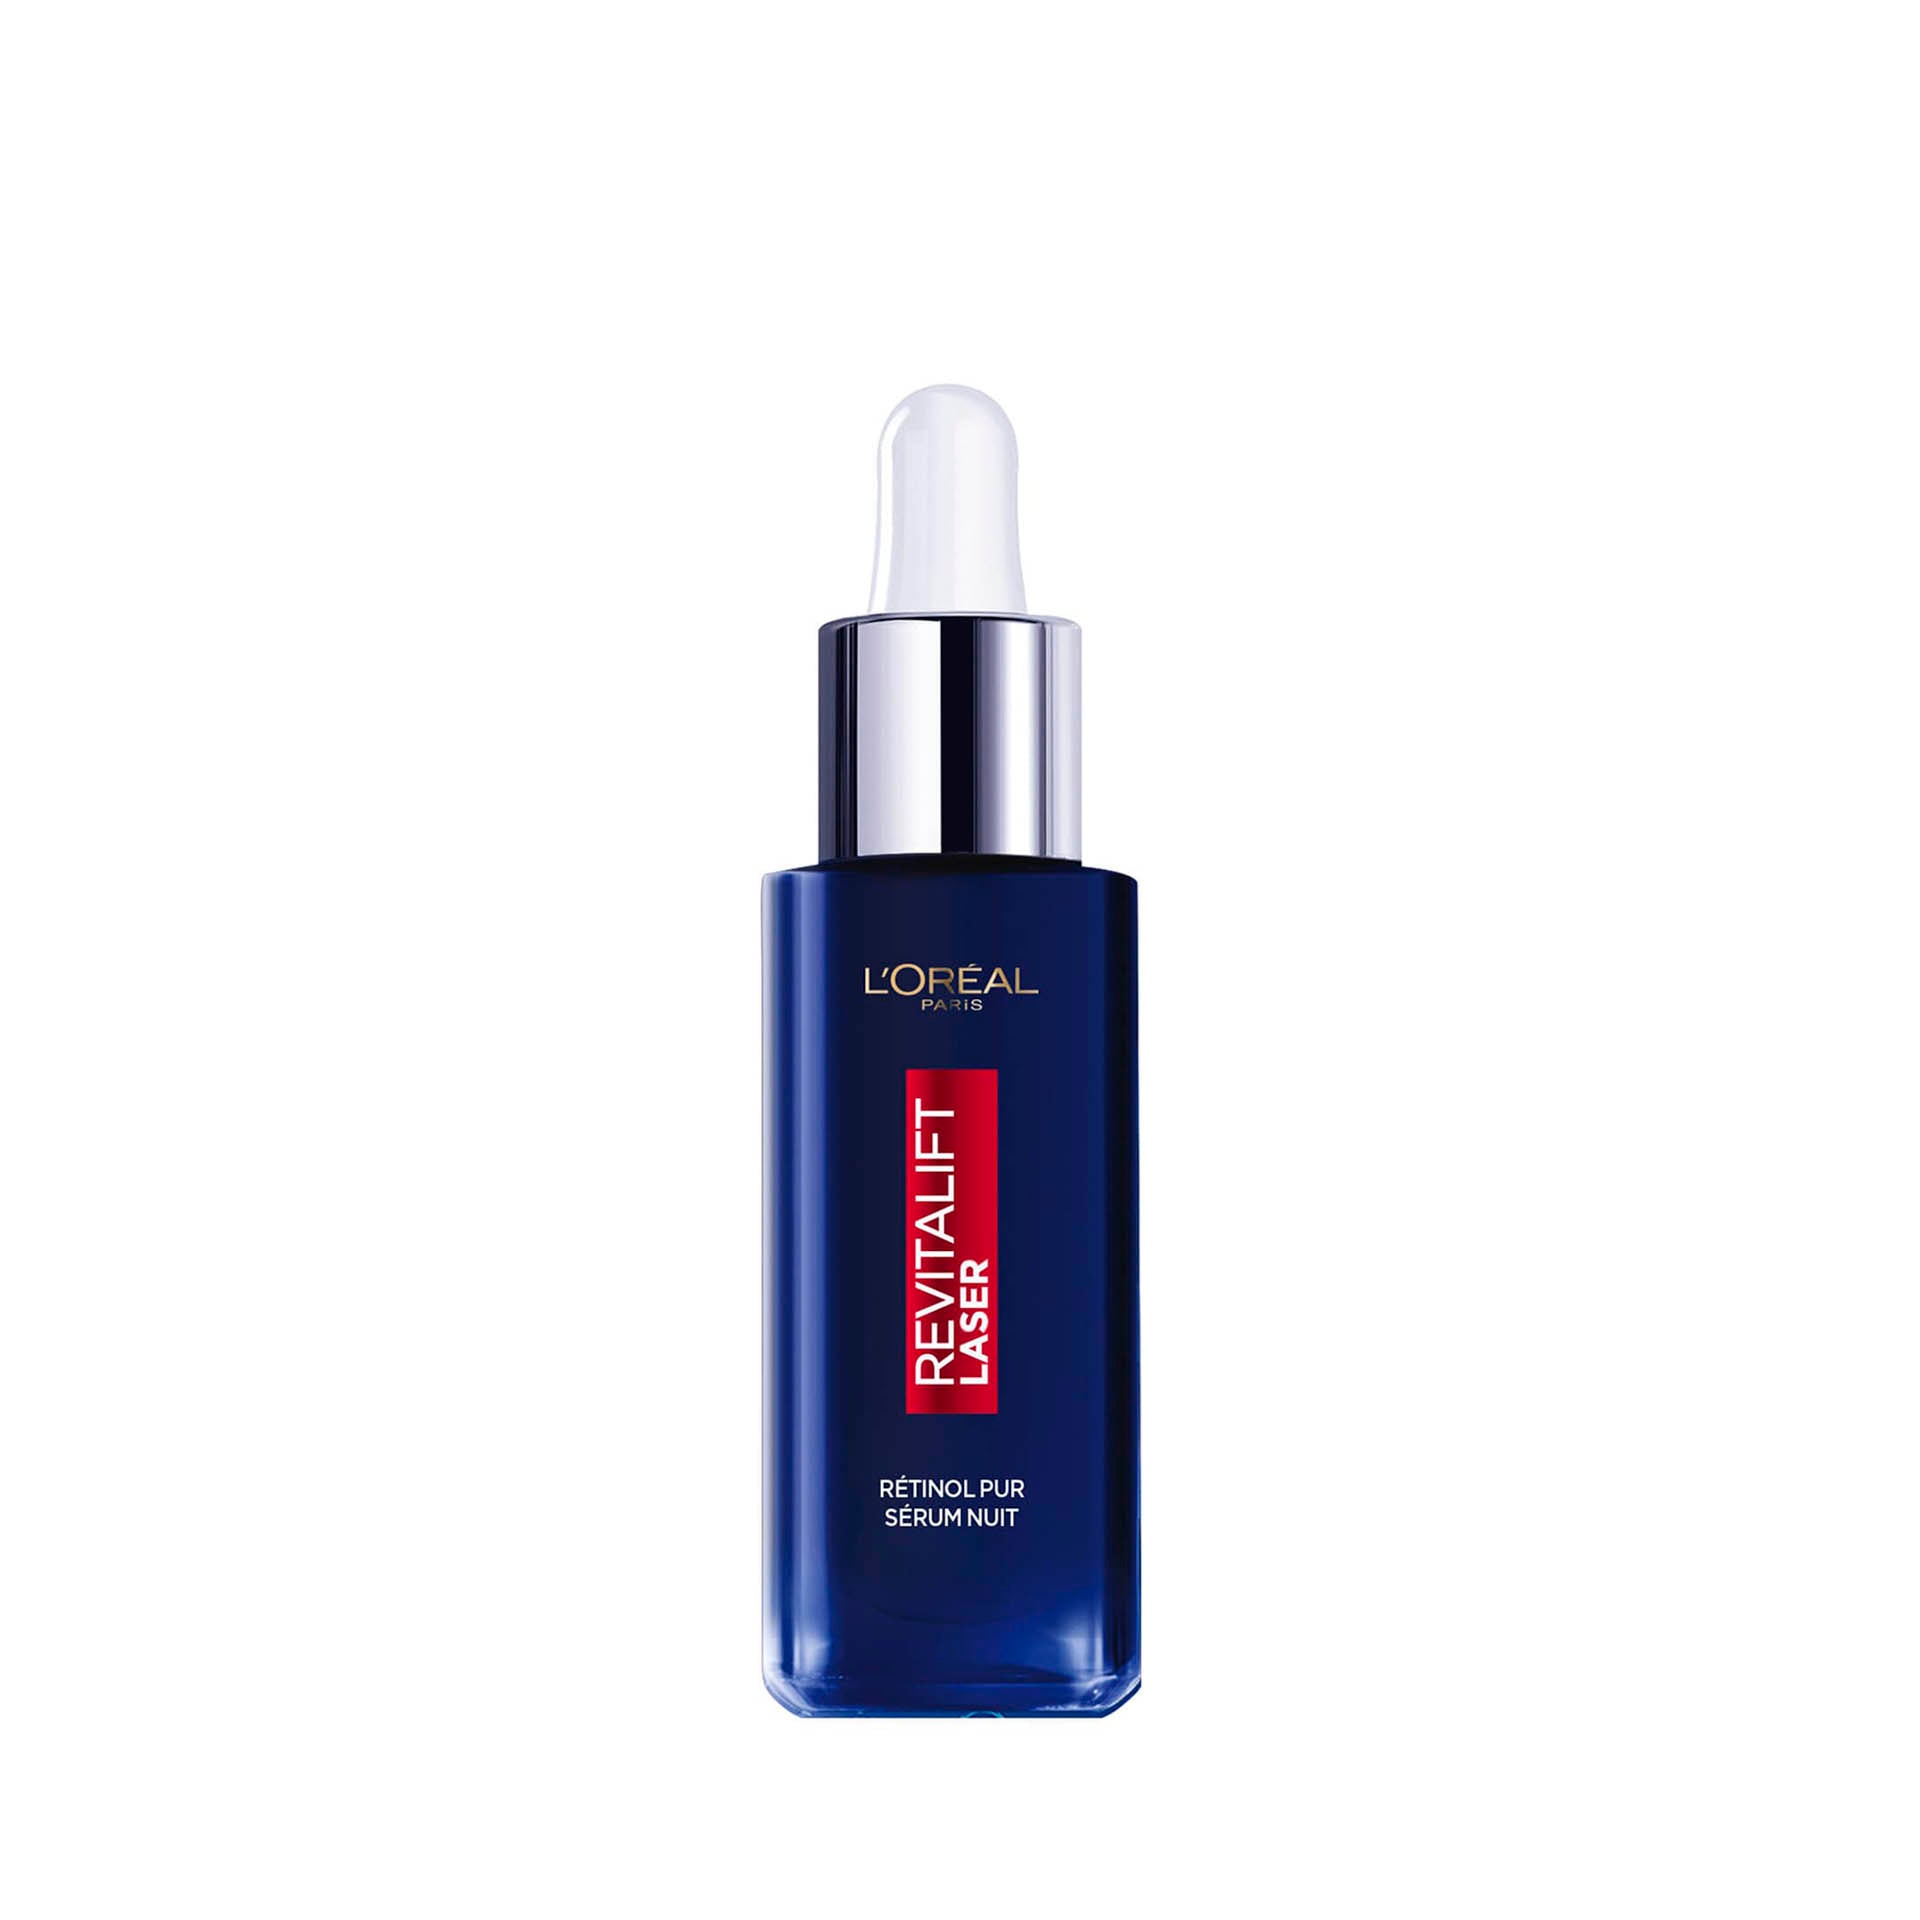 L'Oréal Revitalift Laser Sérum de Noite 30 ml